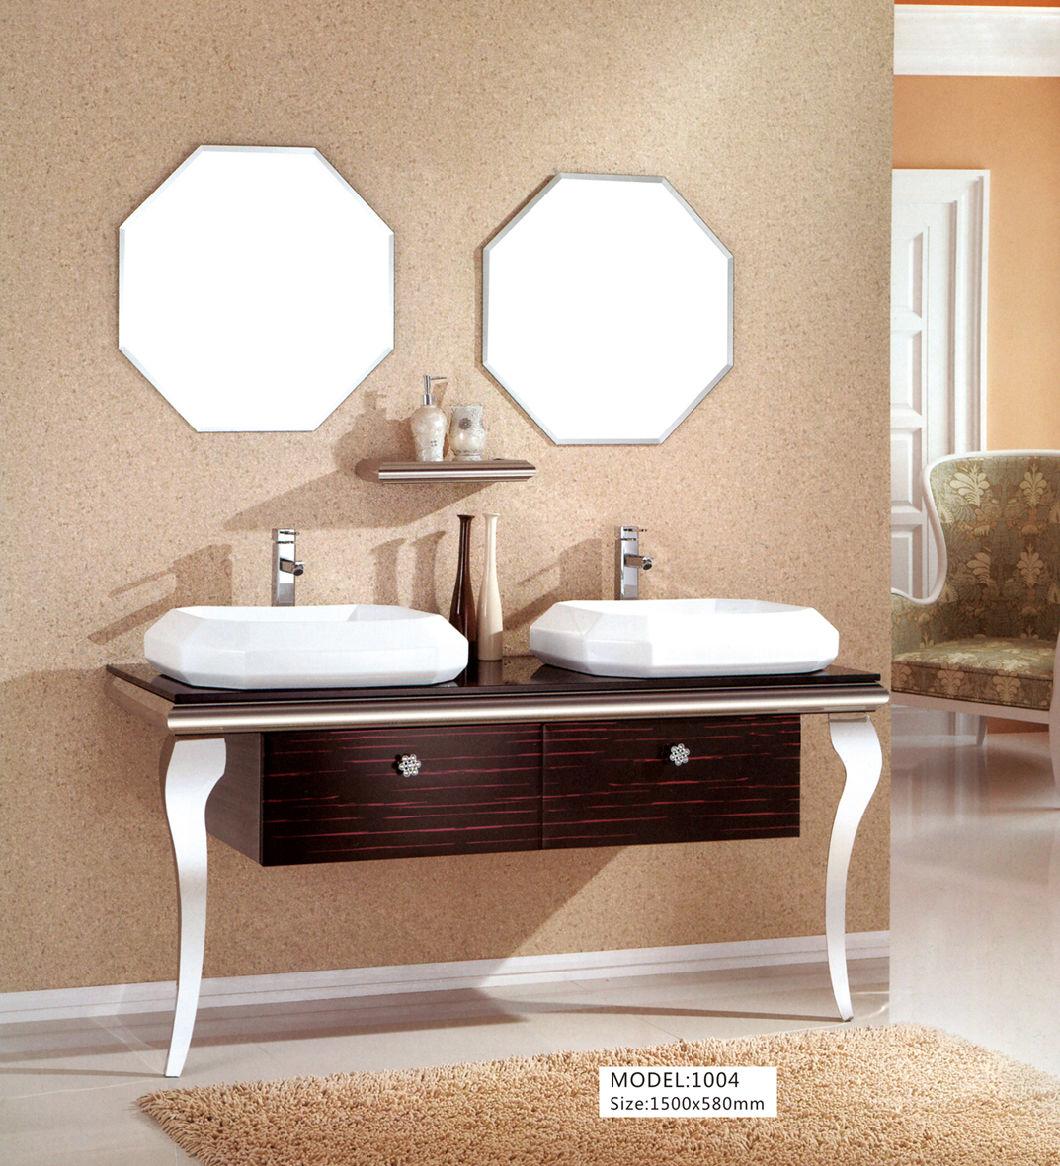 Stainless Steel Home Furniture Bathroom Cabinet Vanity